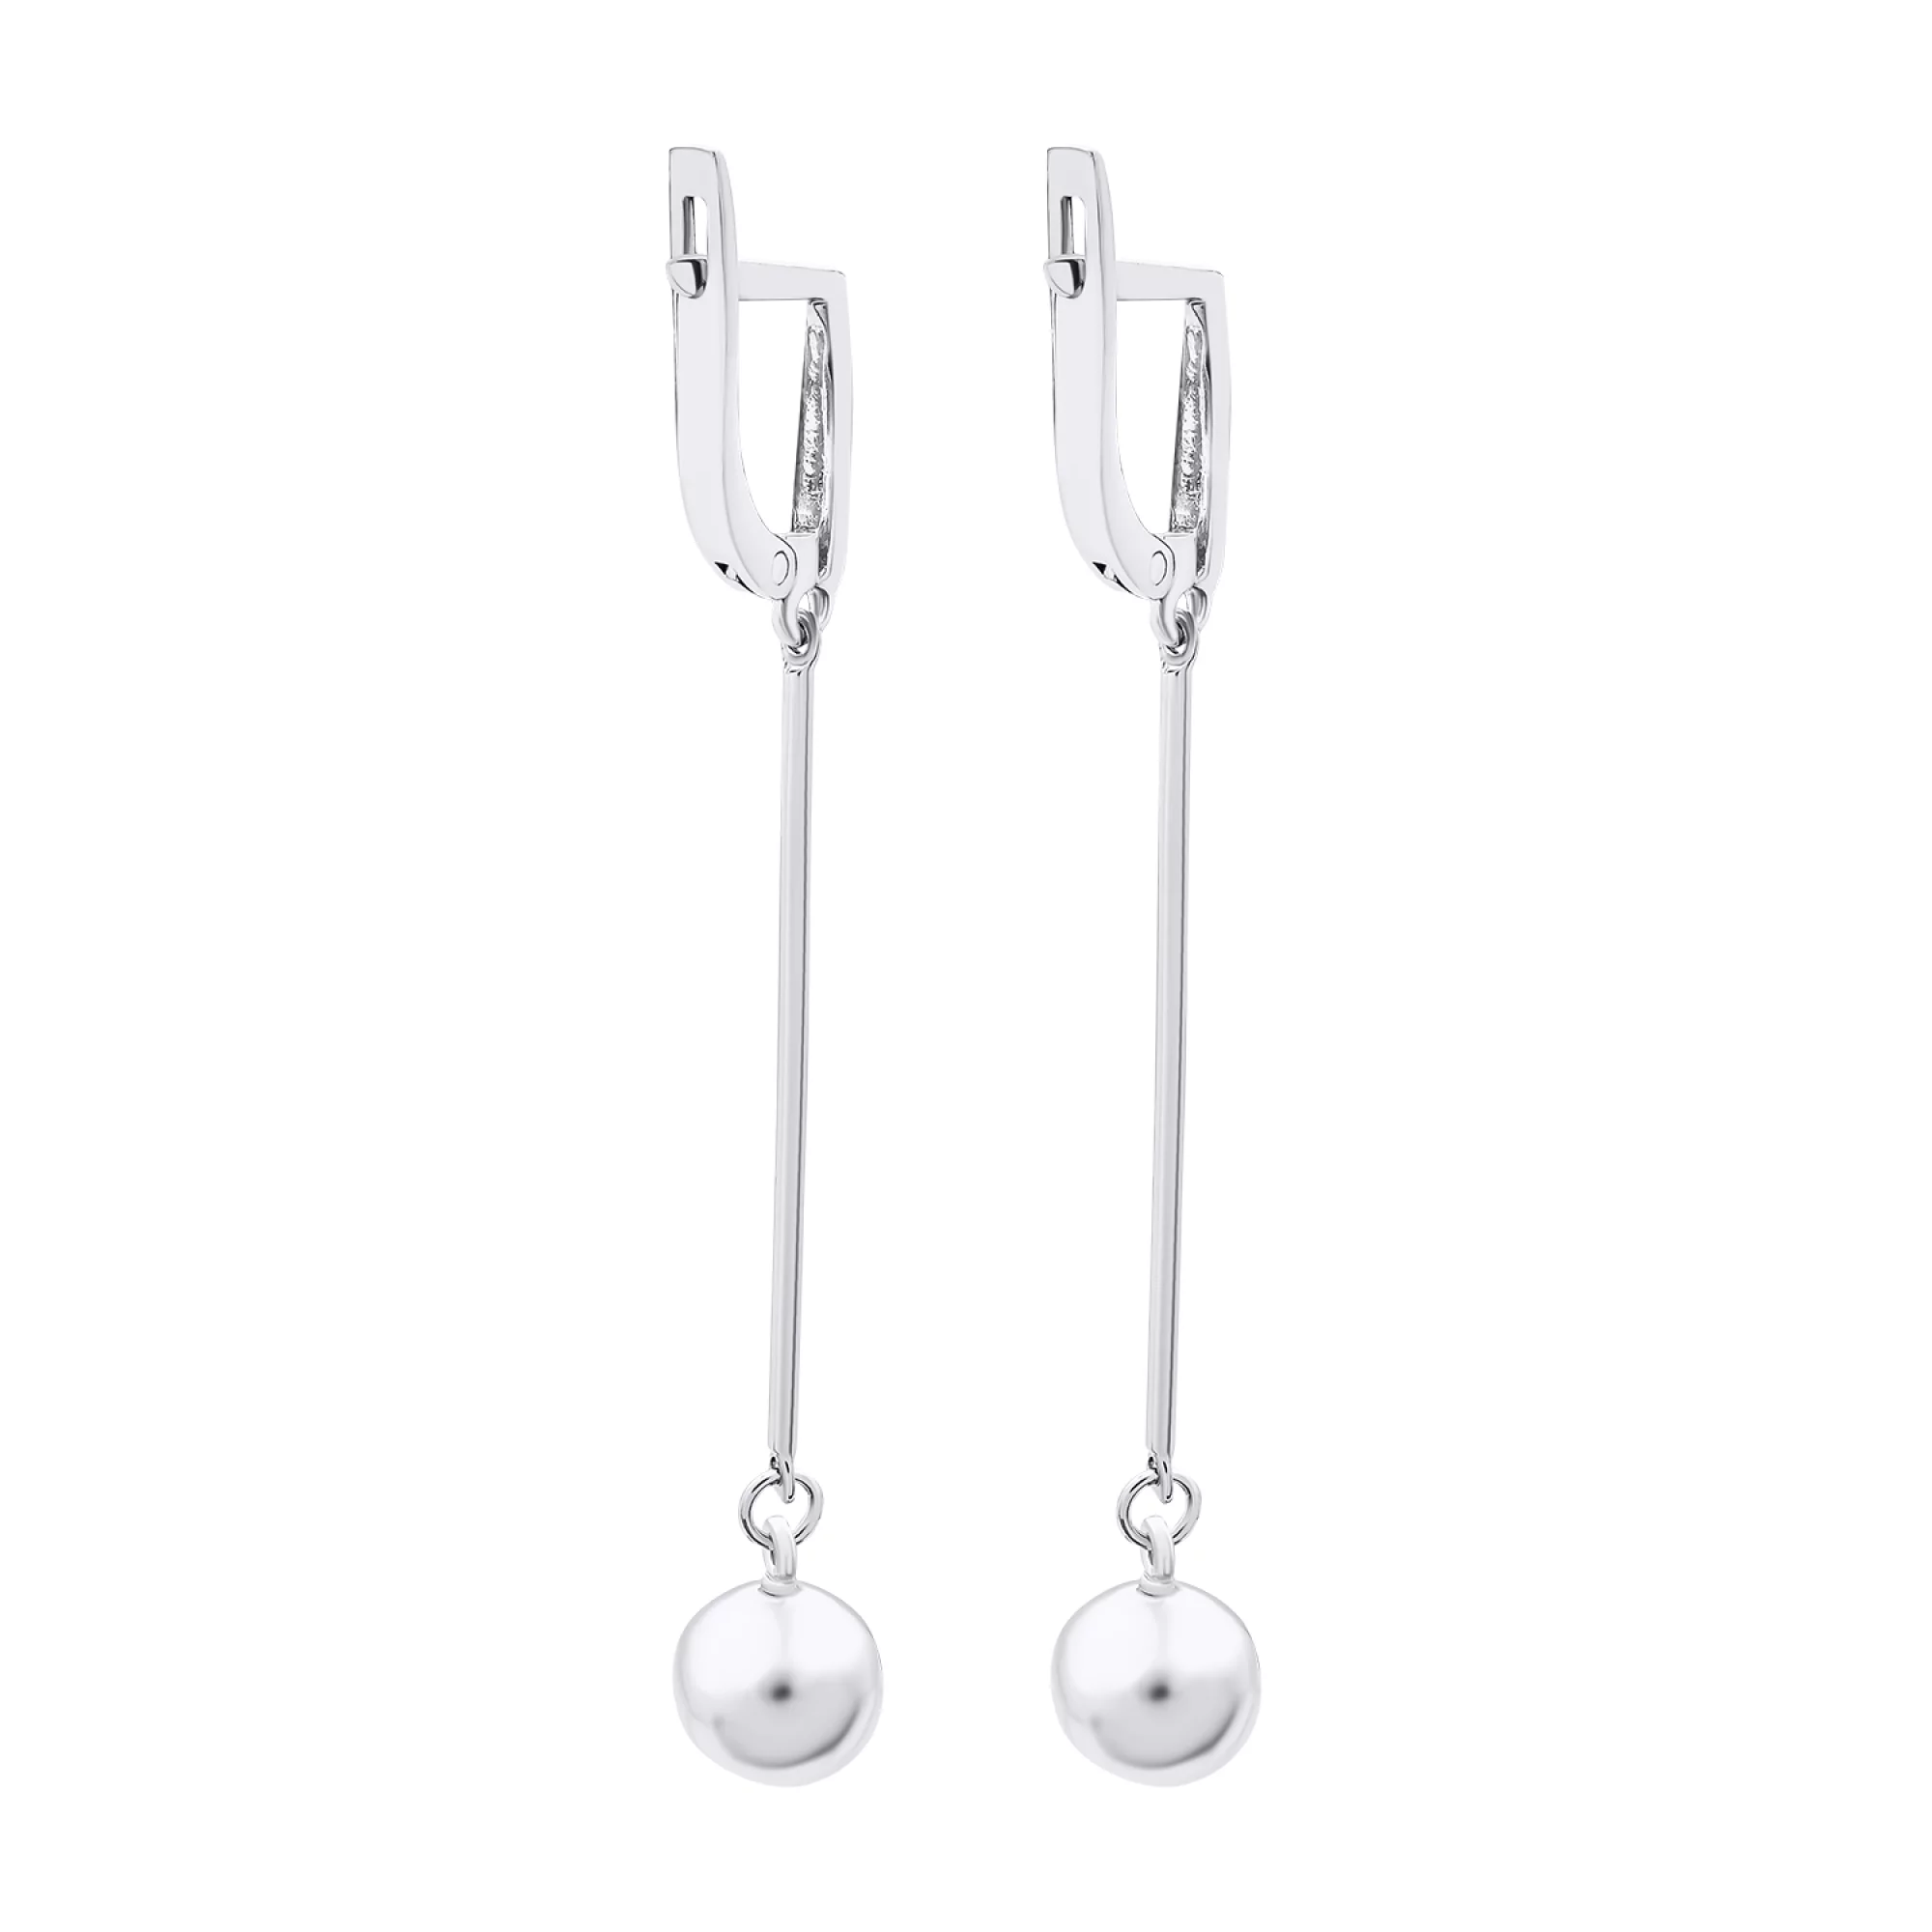 Срібні сережки з підвісками "Кулі" - 1520713 – зображення 2